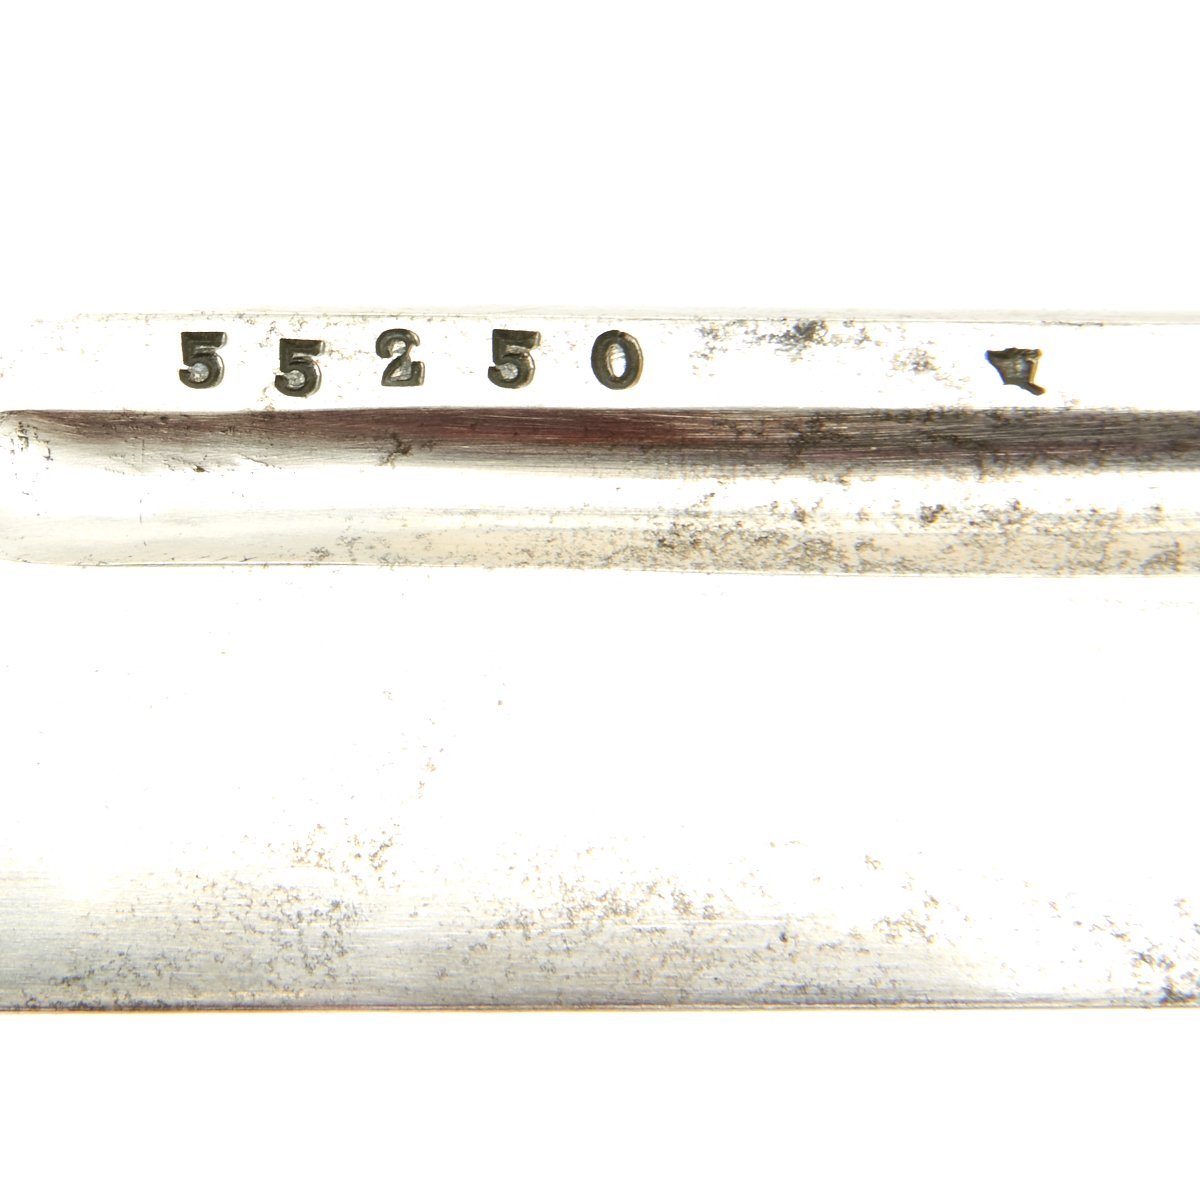 wwii japanese sword serial numbers